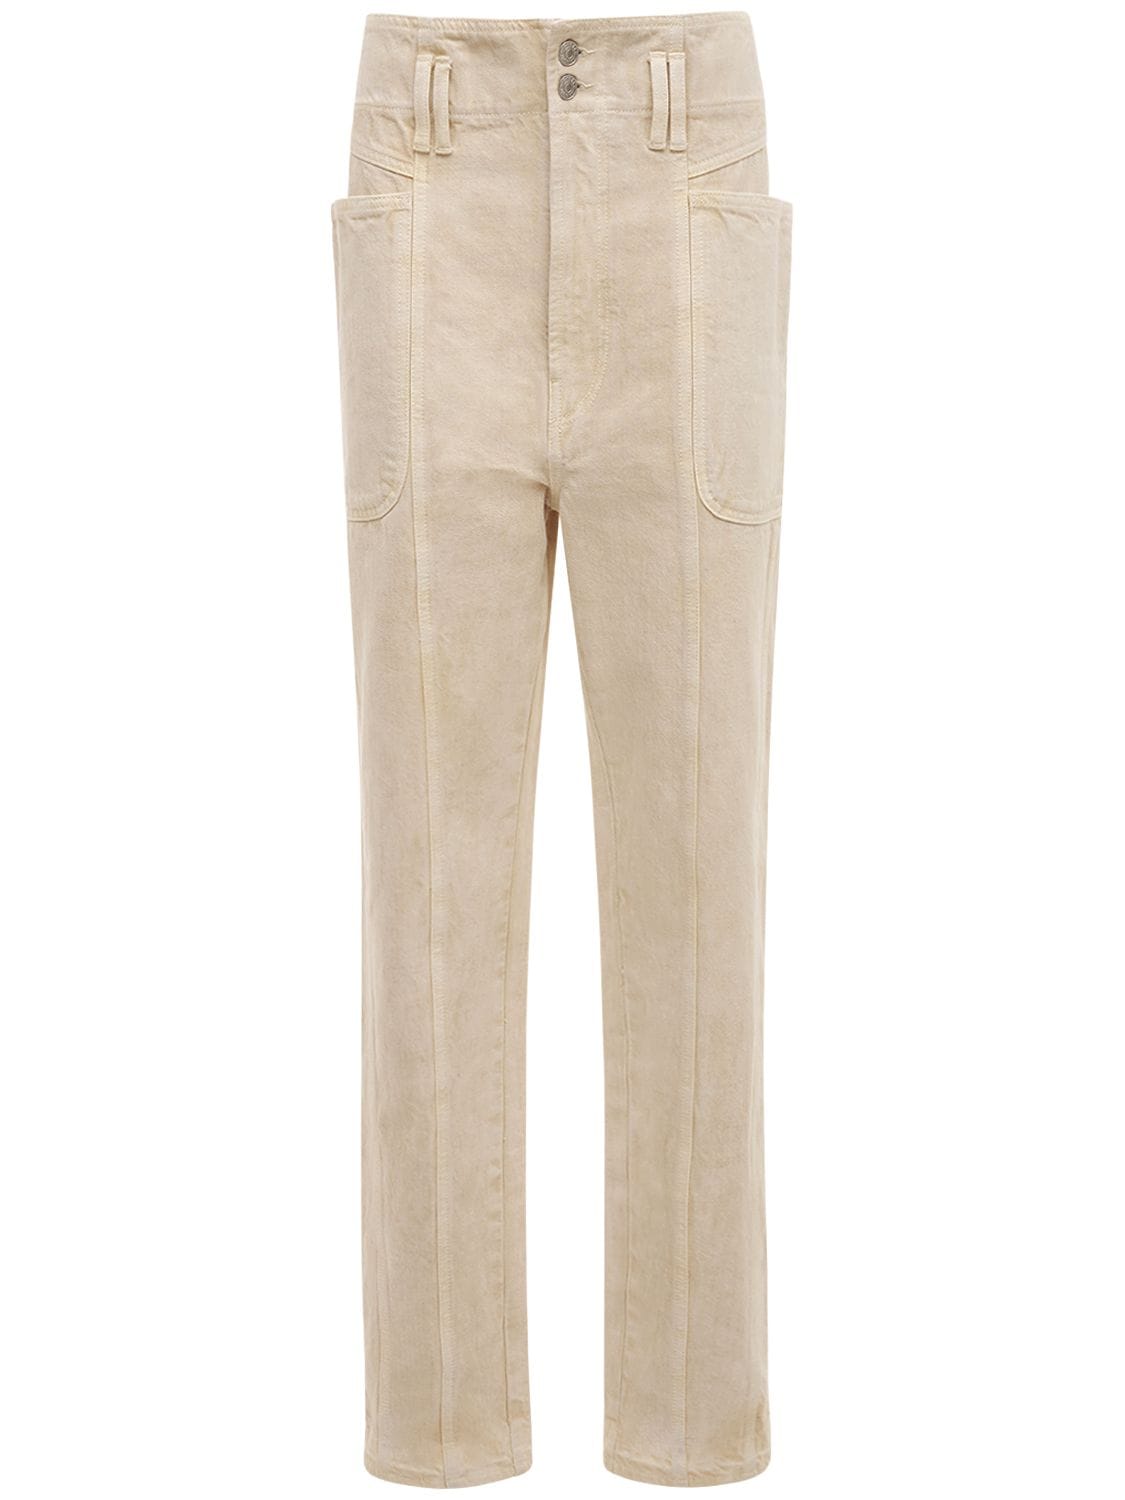 Mujer Pantalones Rectos De Algodón Con Cintura Alta 34 - ISABEL MARANT ÉTOILE - Modalova